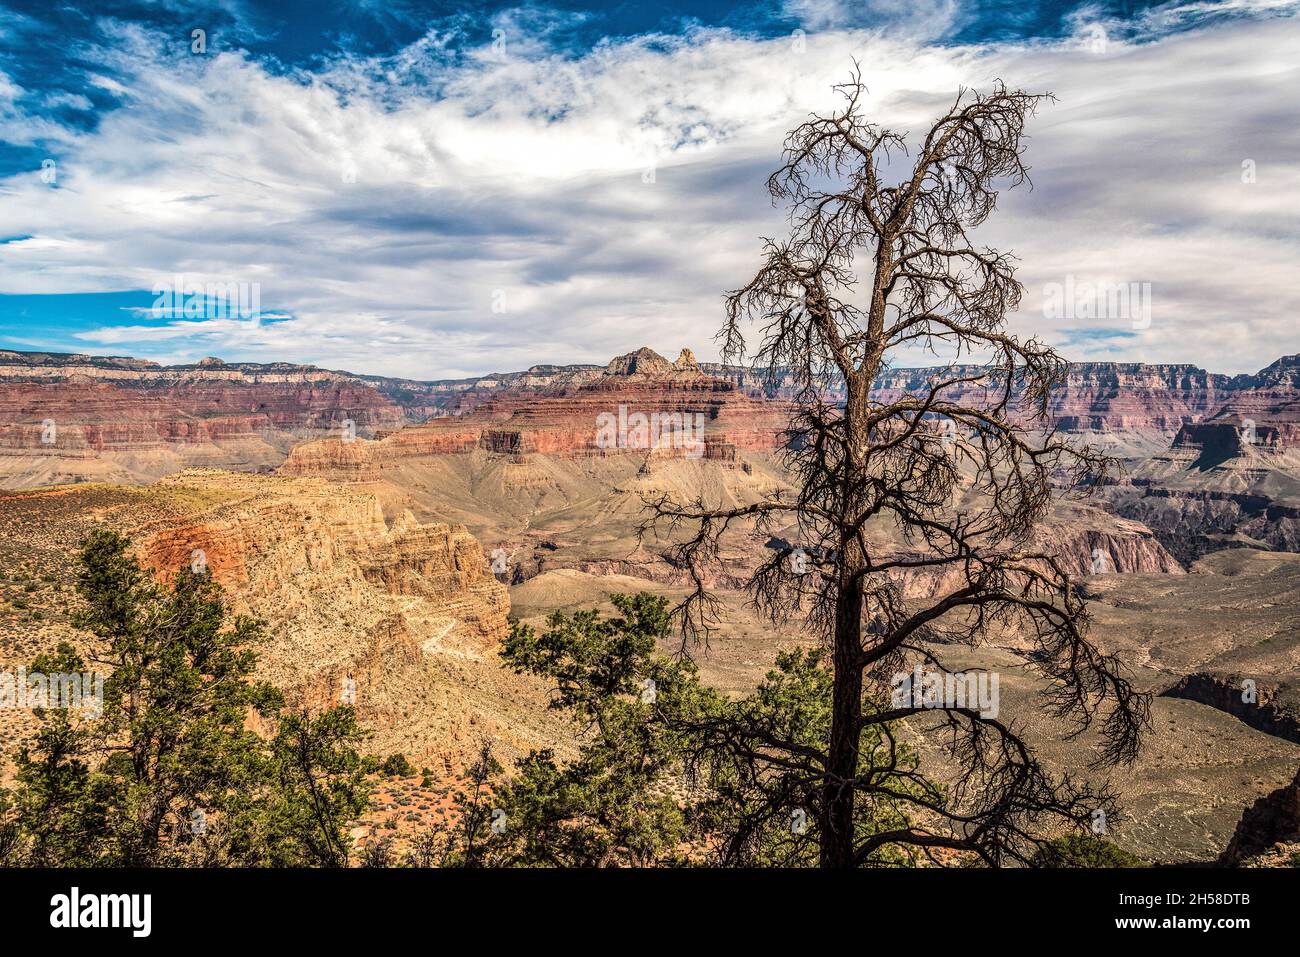 Vue panoramique sur le Grand Canyon depuis South Kaibab Trail, Arizona, États-Unis Banque D'Images